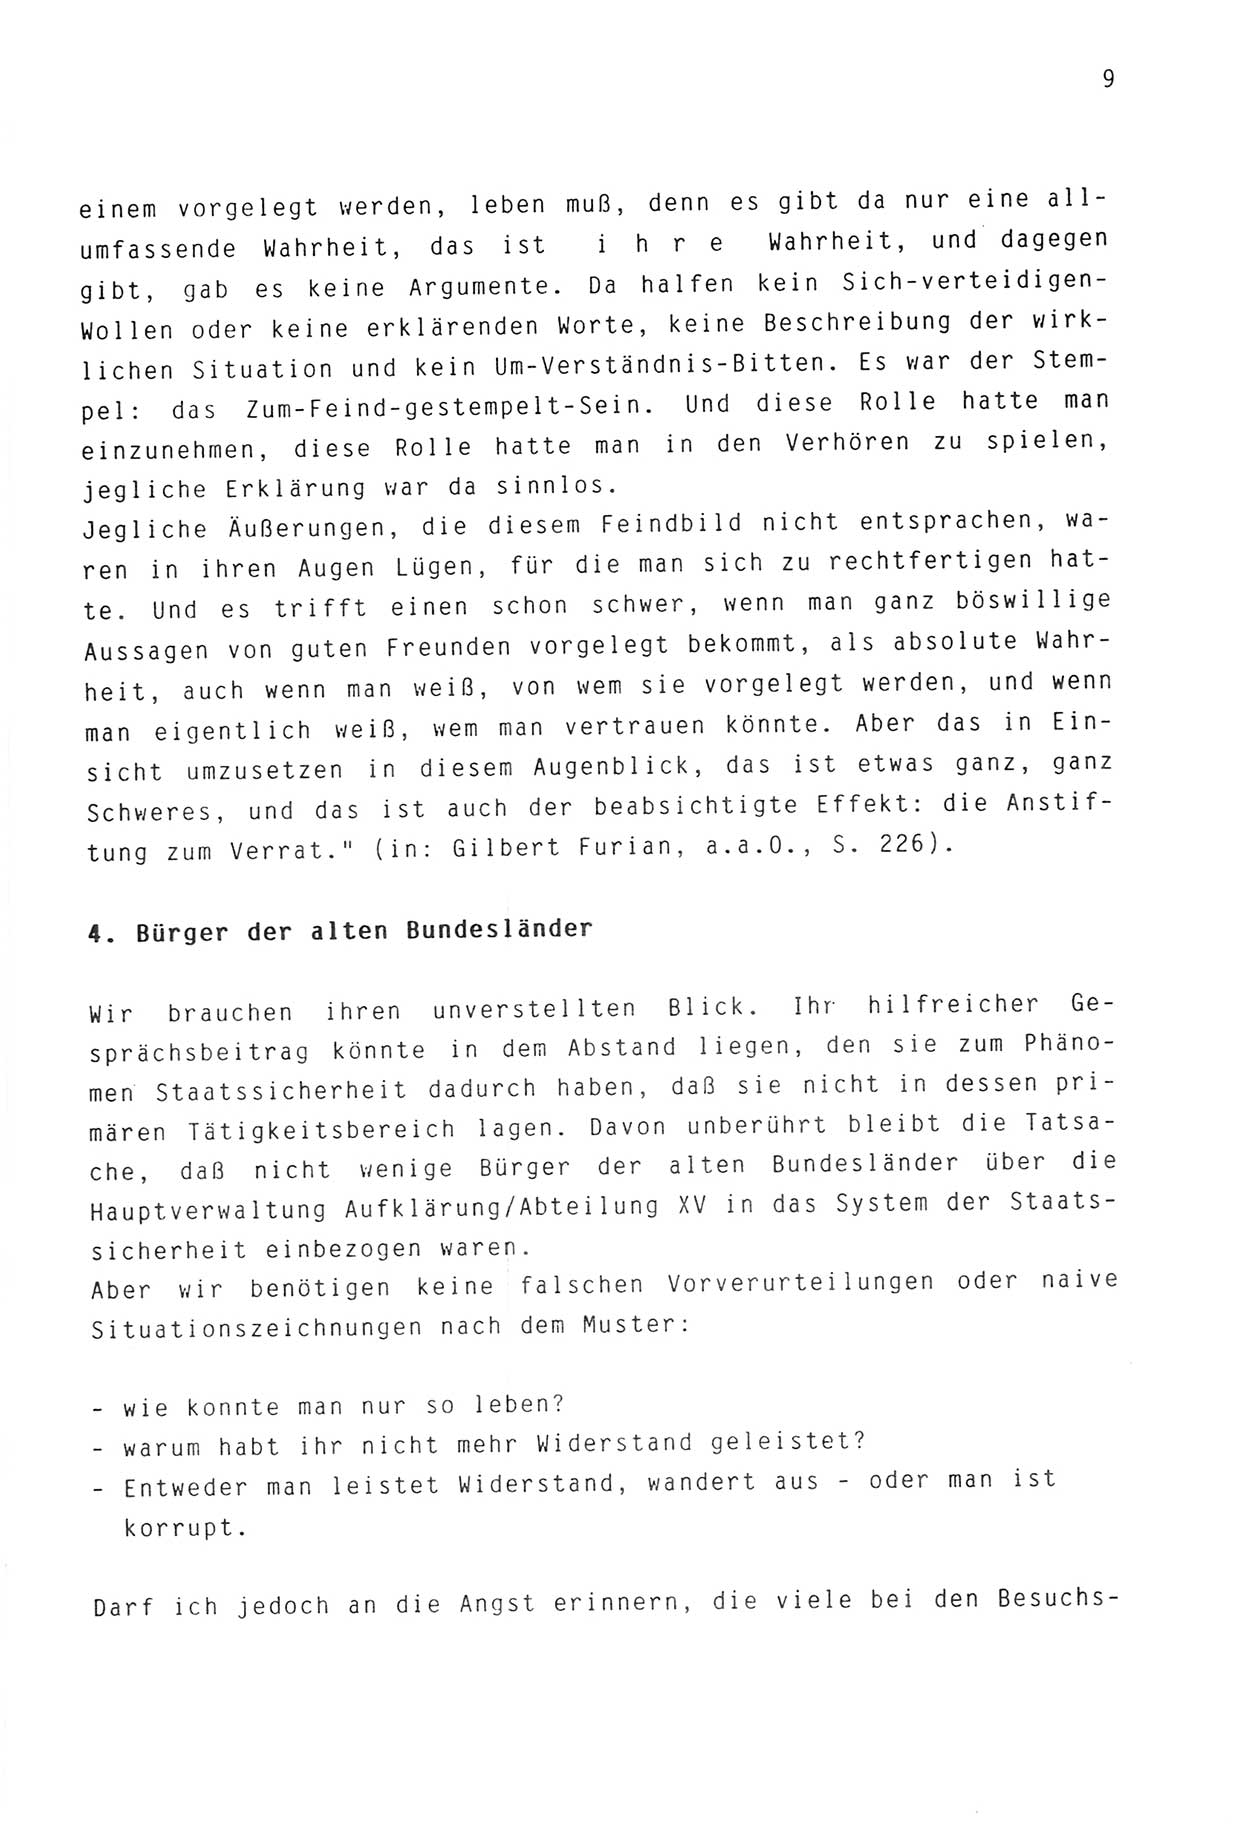 Zwie-Gespräch, Beiträge zur Aufarbeitung der Stasi-Vergangenheit [Deutsche Demokratische Republik (DDR)], Ausgabe Nr. 3, Berlin 1991, Seite 9 (Zwie-Gespr. Ausg. 3 1991, S. 9)